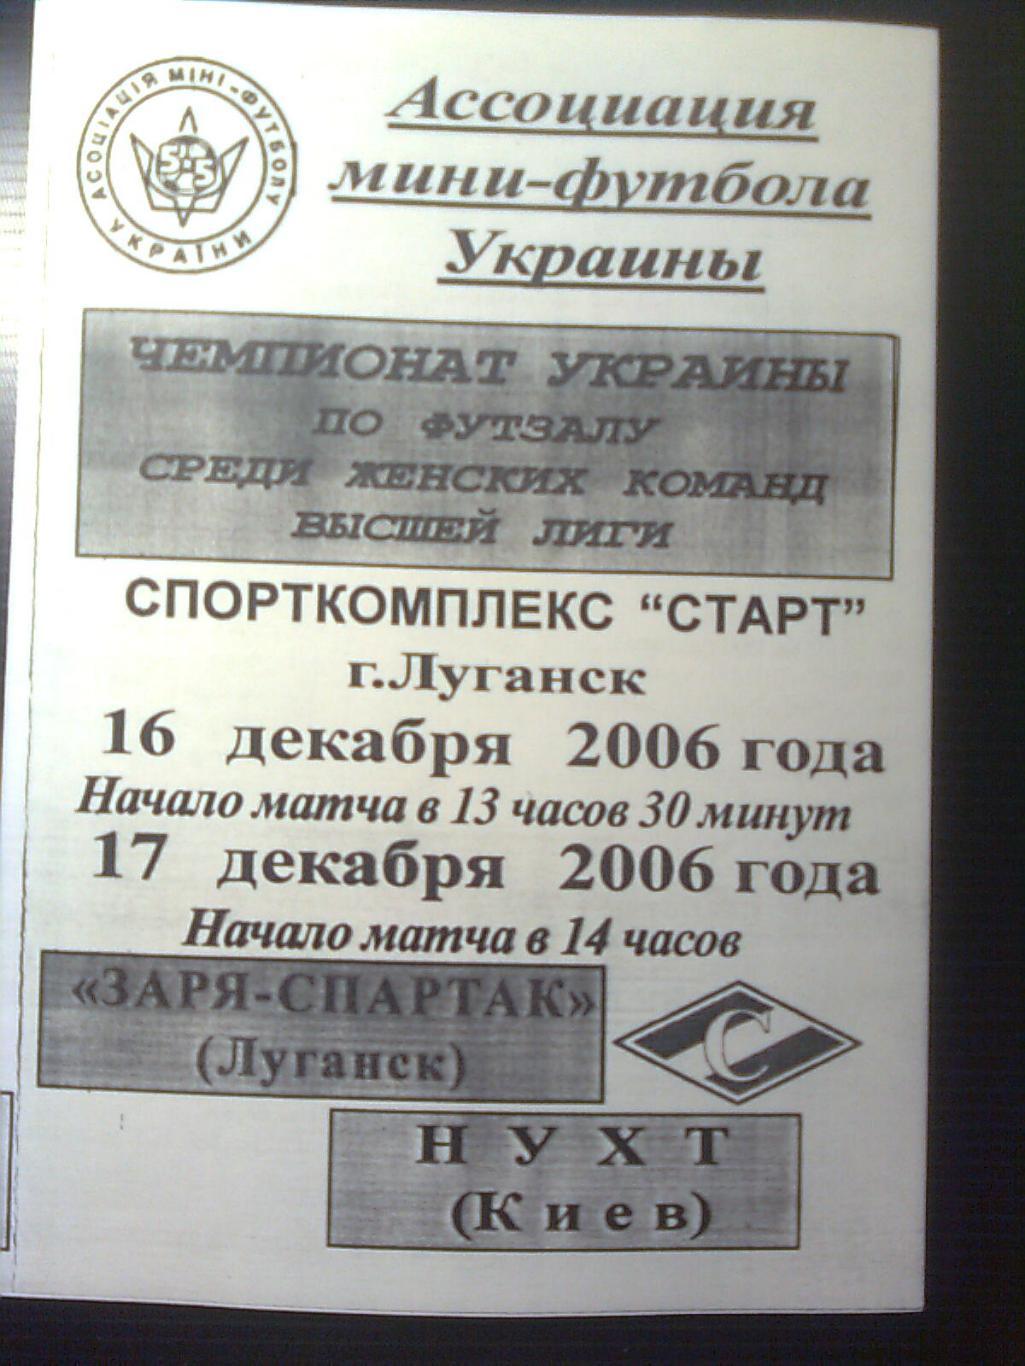 Заря-Спартак(Луганск)-НУХТ(Киев) 16-17 декабря 2006 год.